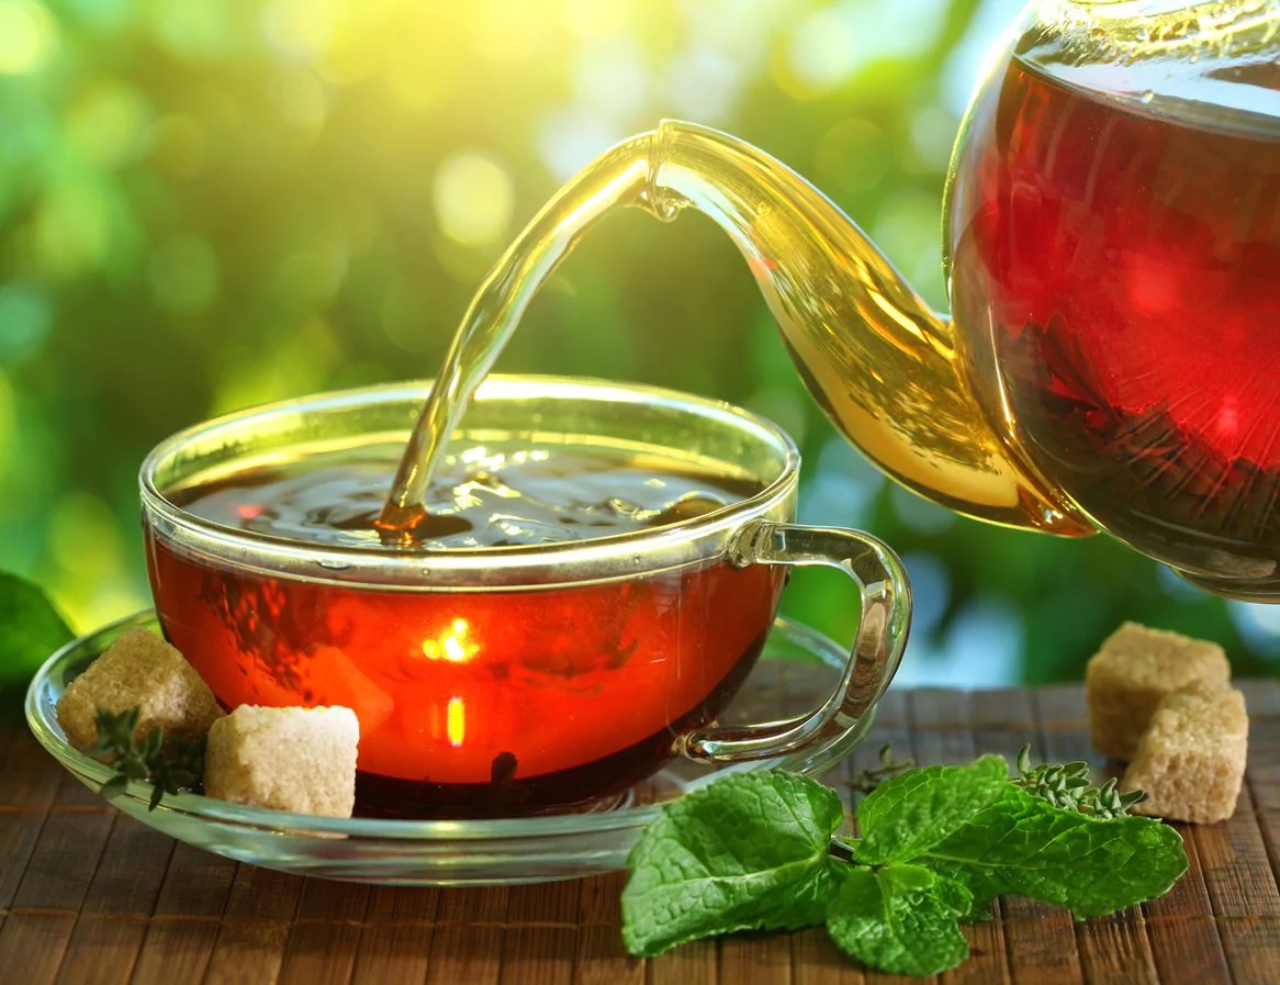 أي شاي يحتوي على نسبة عالية من الكافيين؟